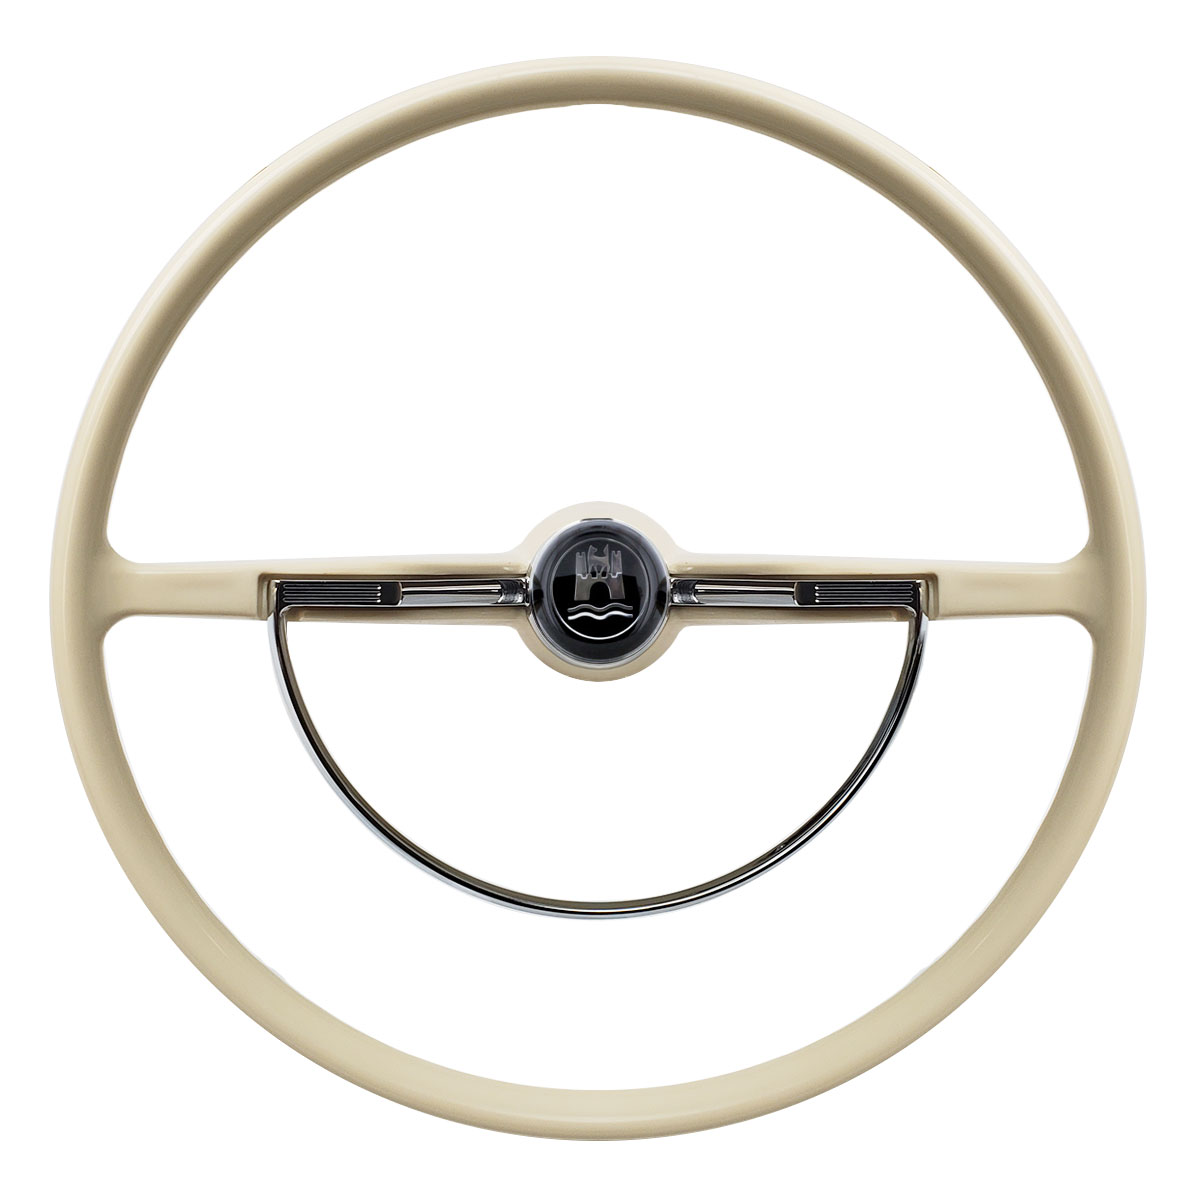 VW Volkswagen Steering Wheel for Bug Beetle Ghia Type 3 63-71 113415651ABK